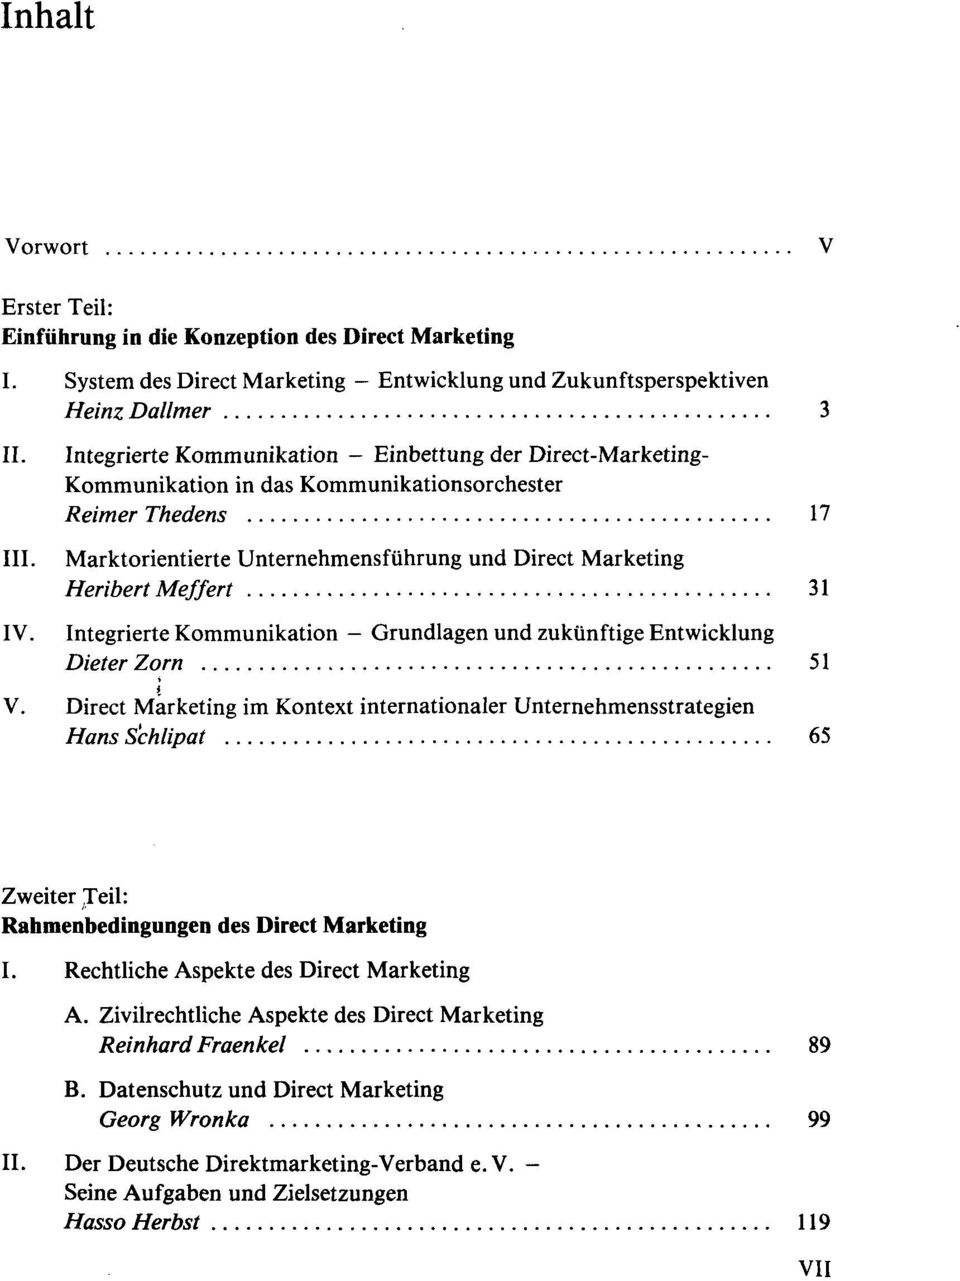 Thedens 17 Marktorientierte Unternehmensführung und Direct Marketing Heribert Meffert 31 IV. Integrierte Kommunikation - Grundlagen und zukünftige Entwicklung Dieter Zorn 51 i V.